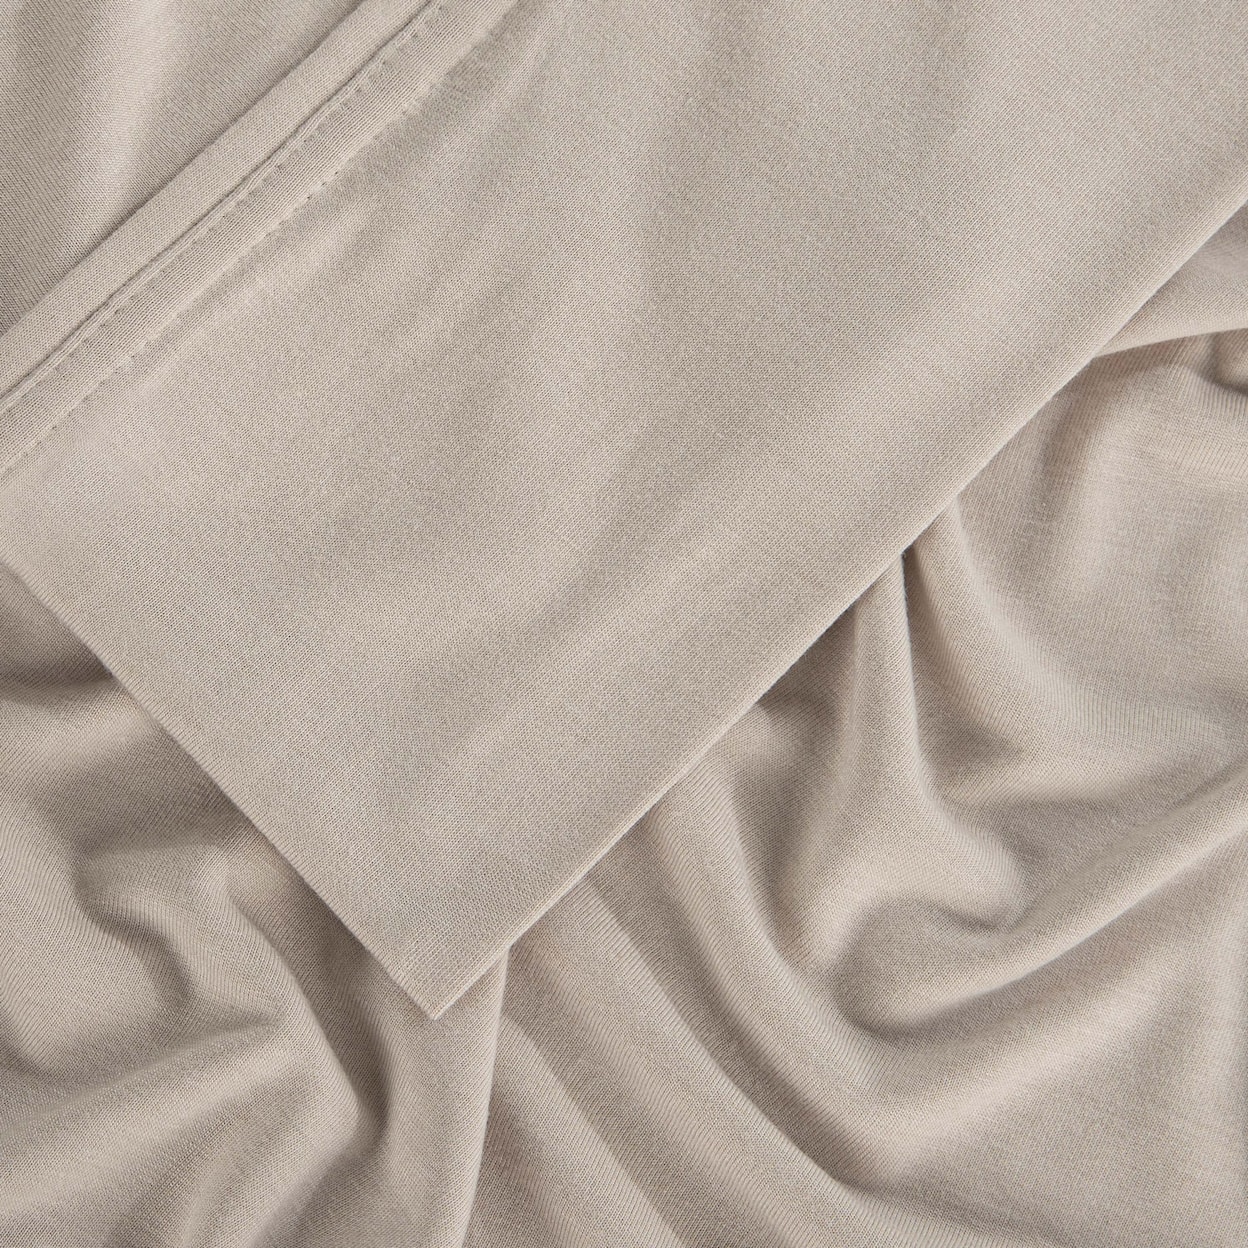 Bedgear Hyper-Wool Sheets Sheet Set,Beige,Split King/Split Cal King